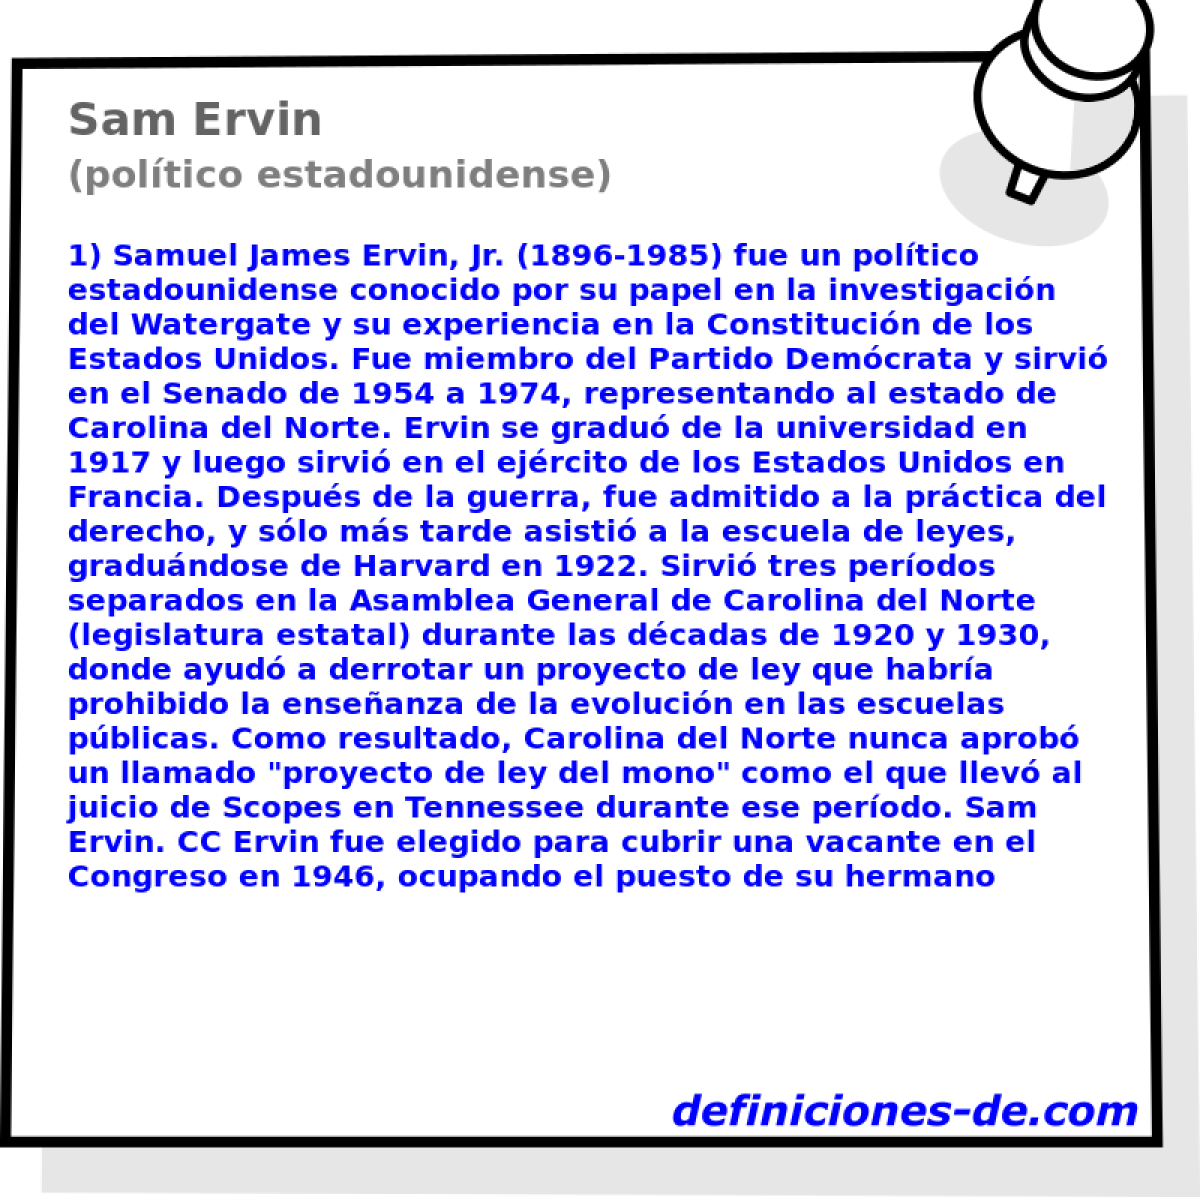 Sam Ervin (poltico estadounidense)